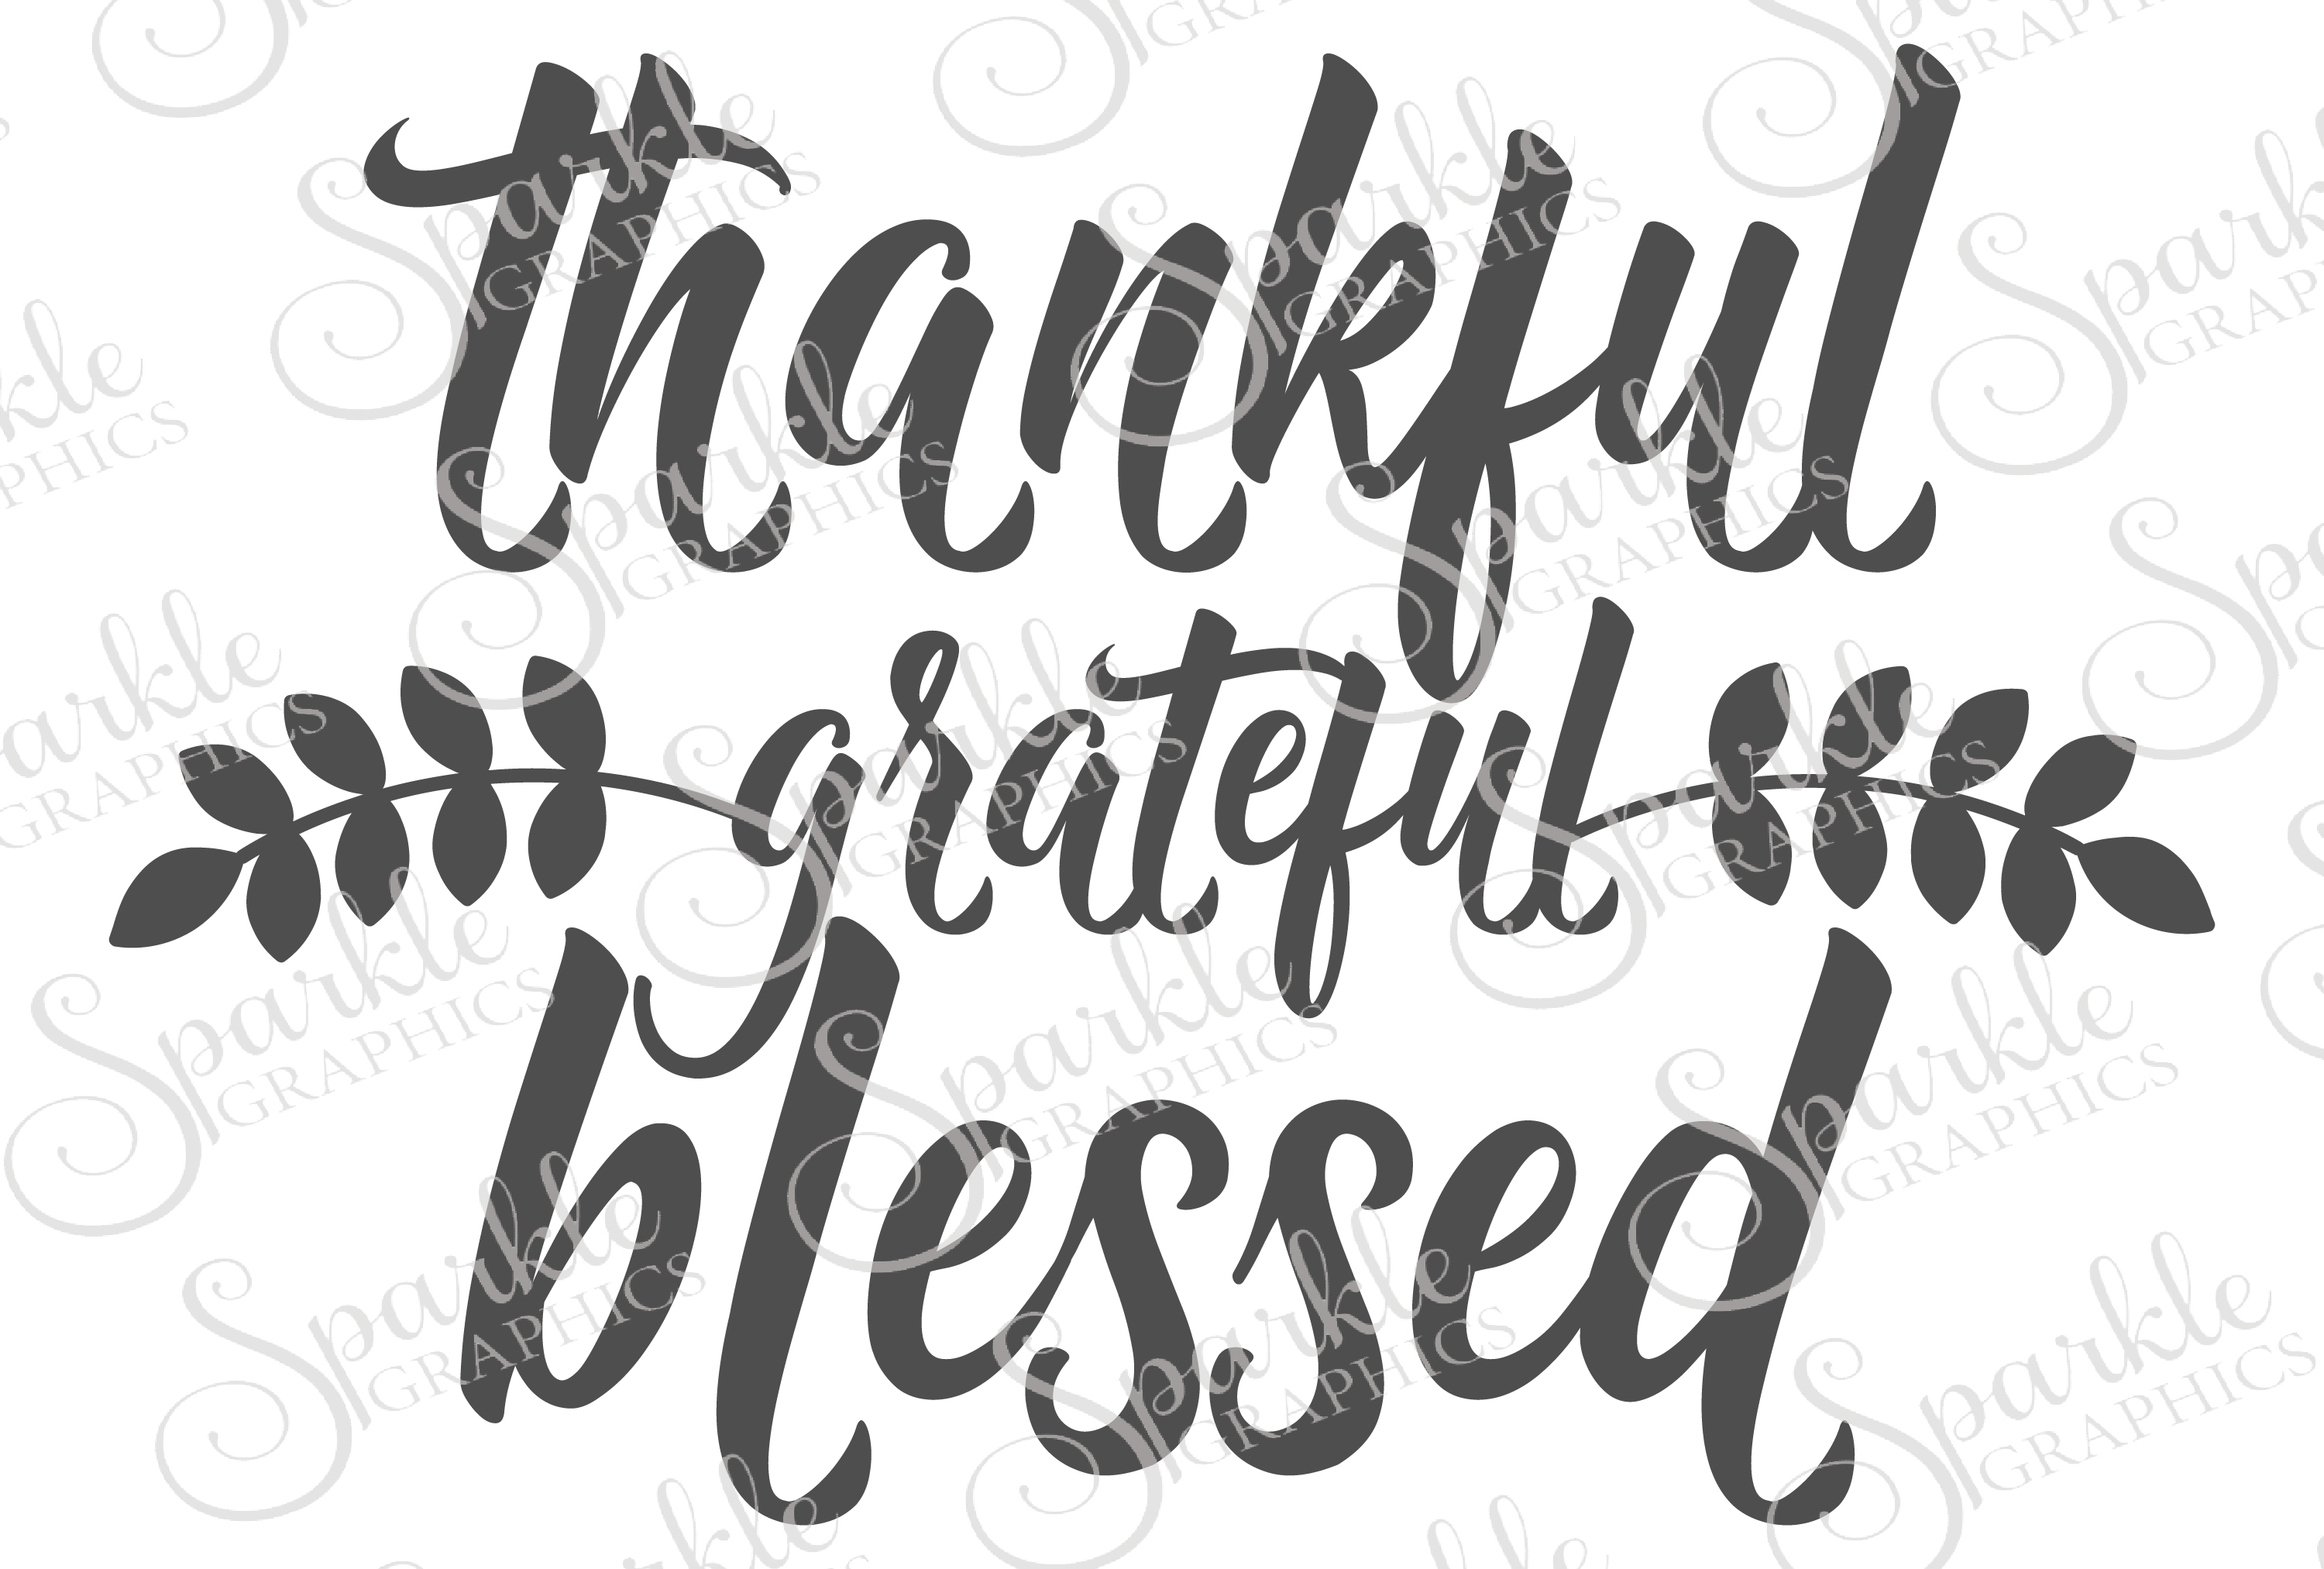 Download Thankful Grateful Blessed Cut File Set | Design Bundles